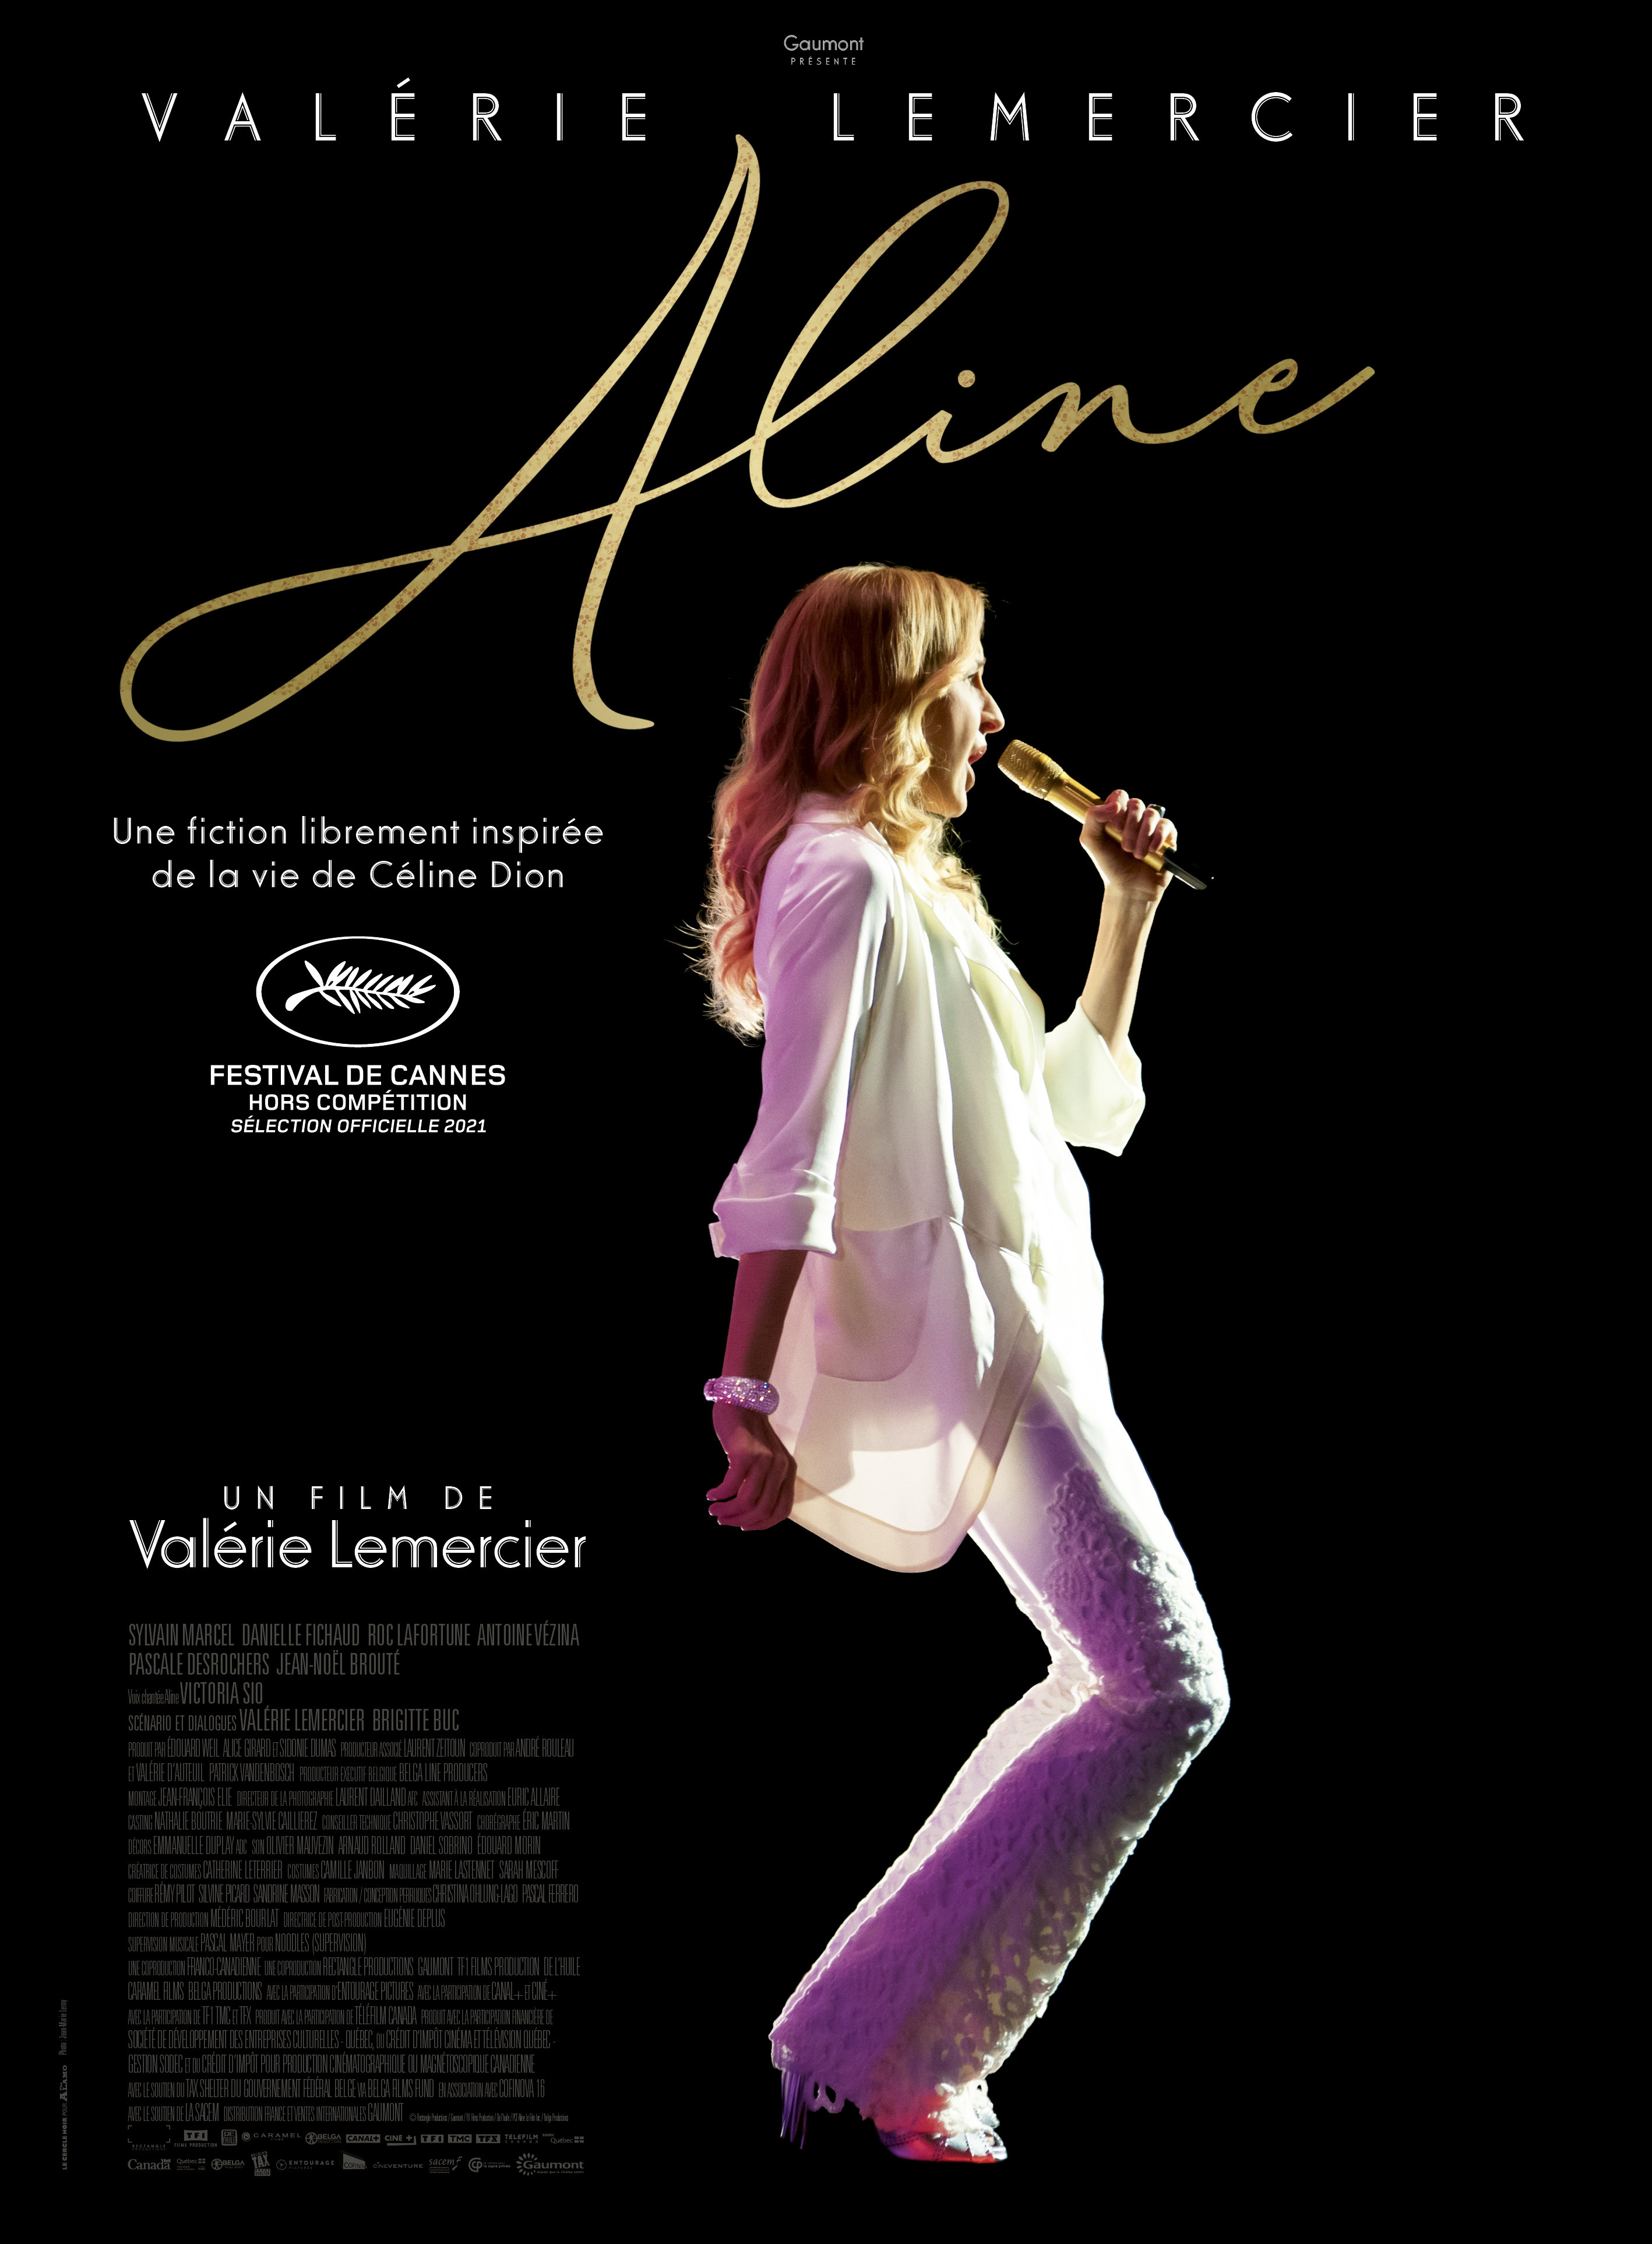 Aline de Valérie Lemercier